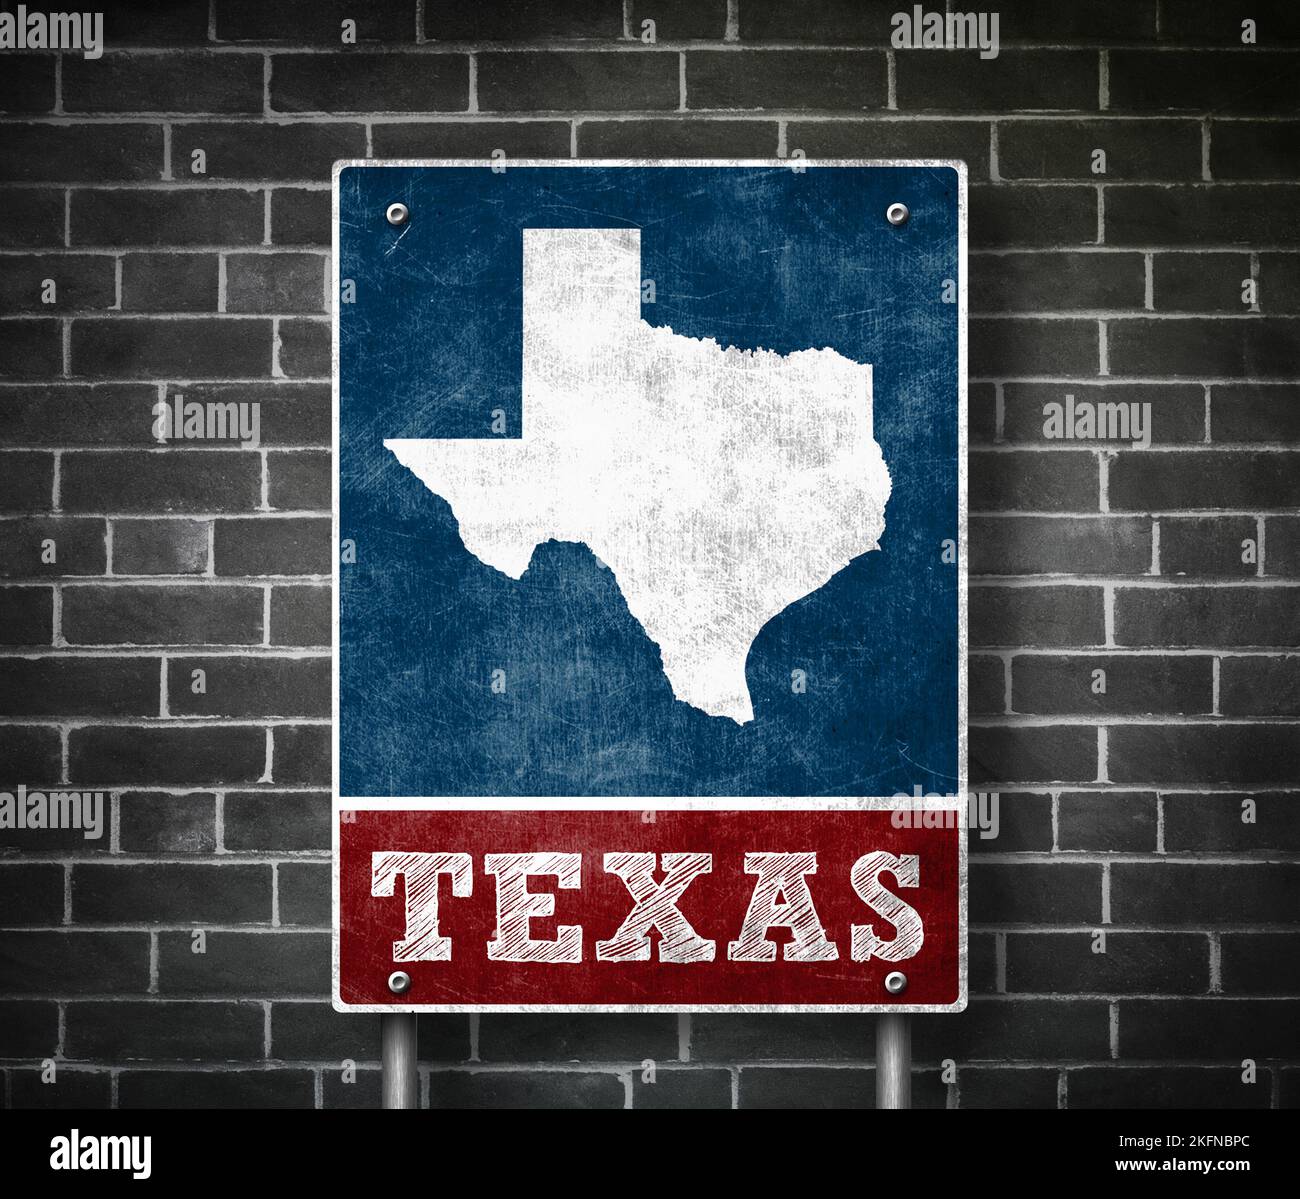 Estados Unidos - señal de carretera del estado de Texas Foto de stock